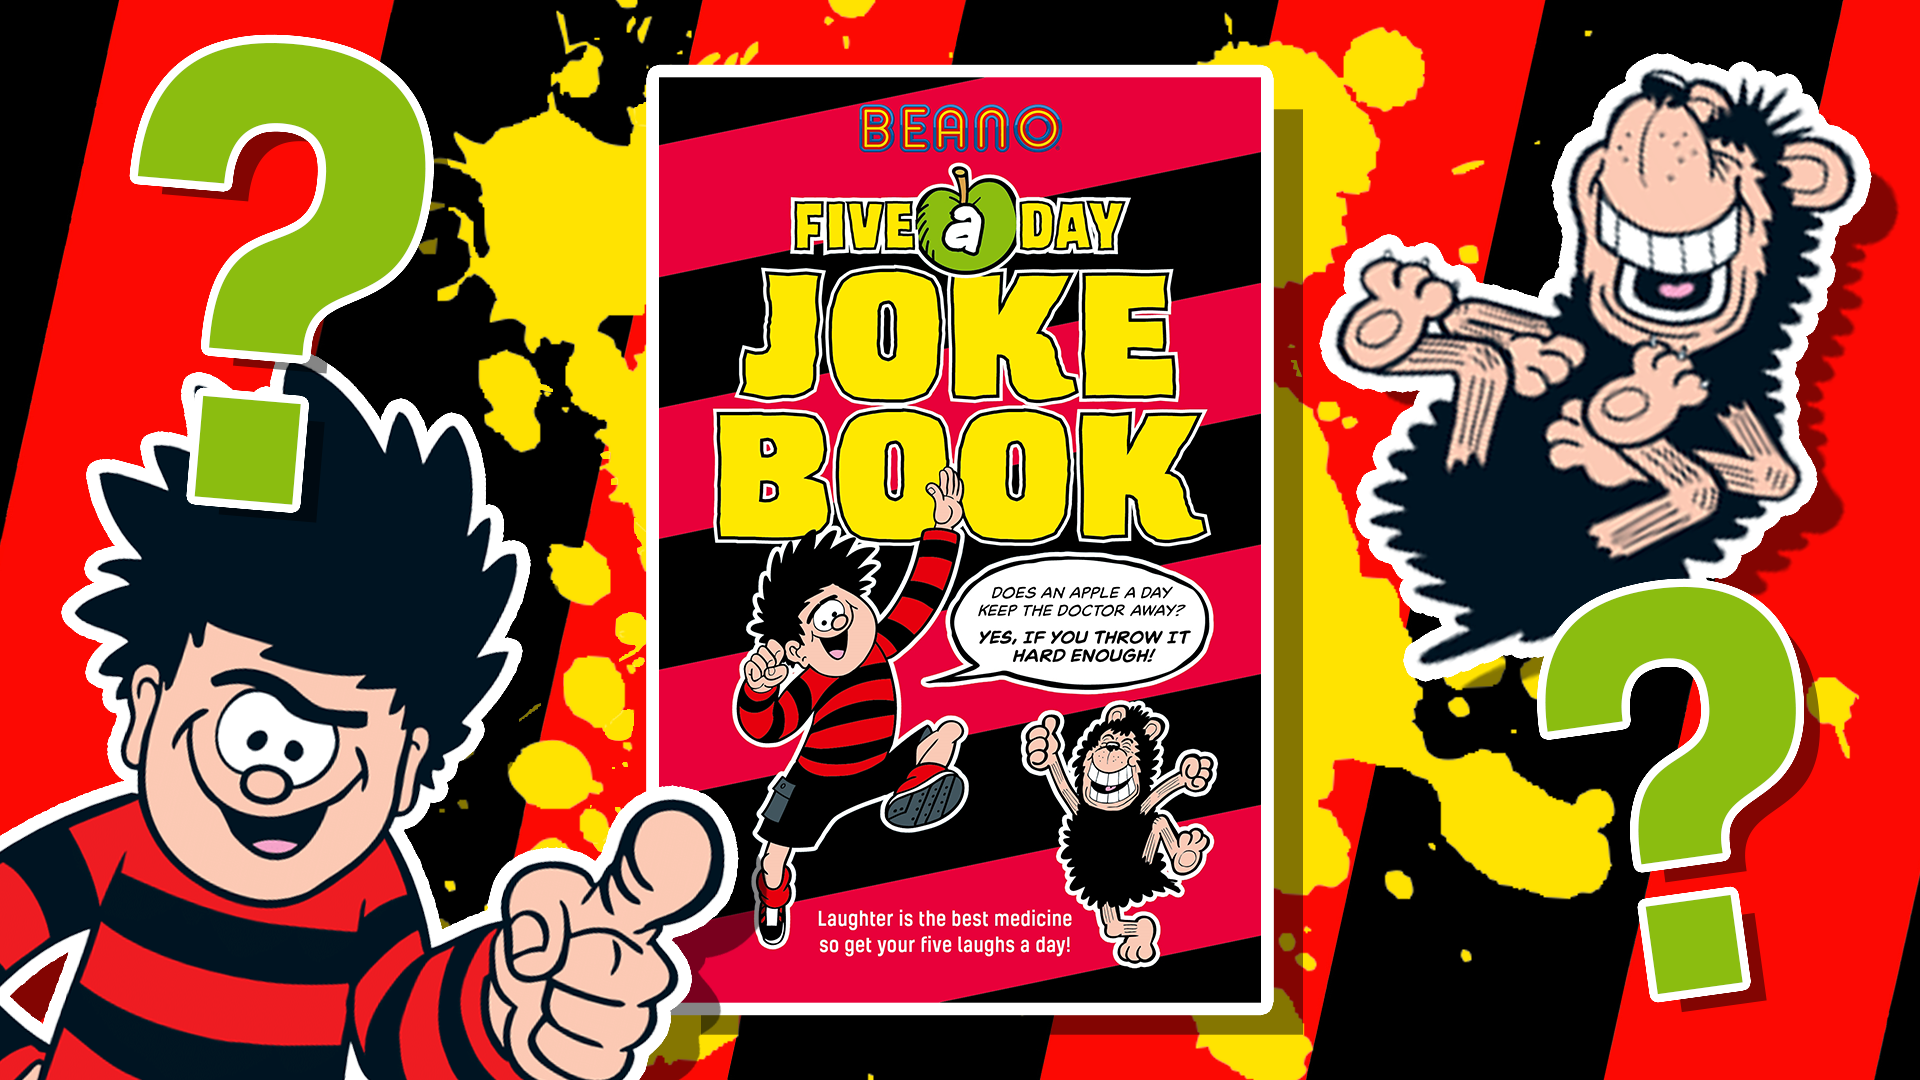 Beano's Five a Day Joke Book